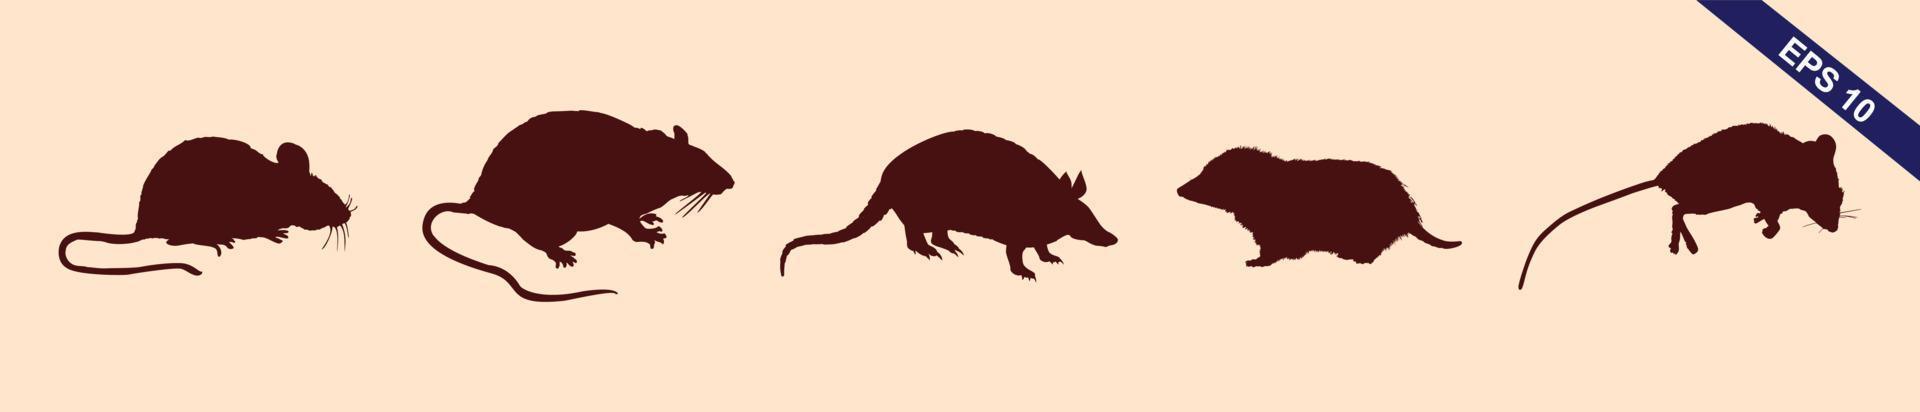 colección de ratas y ratones - silueta vectorial vector